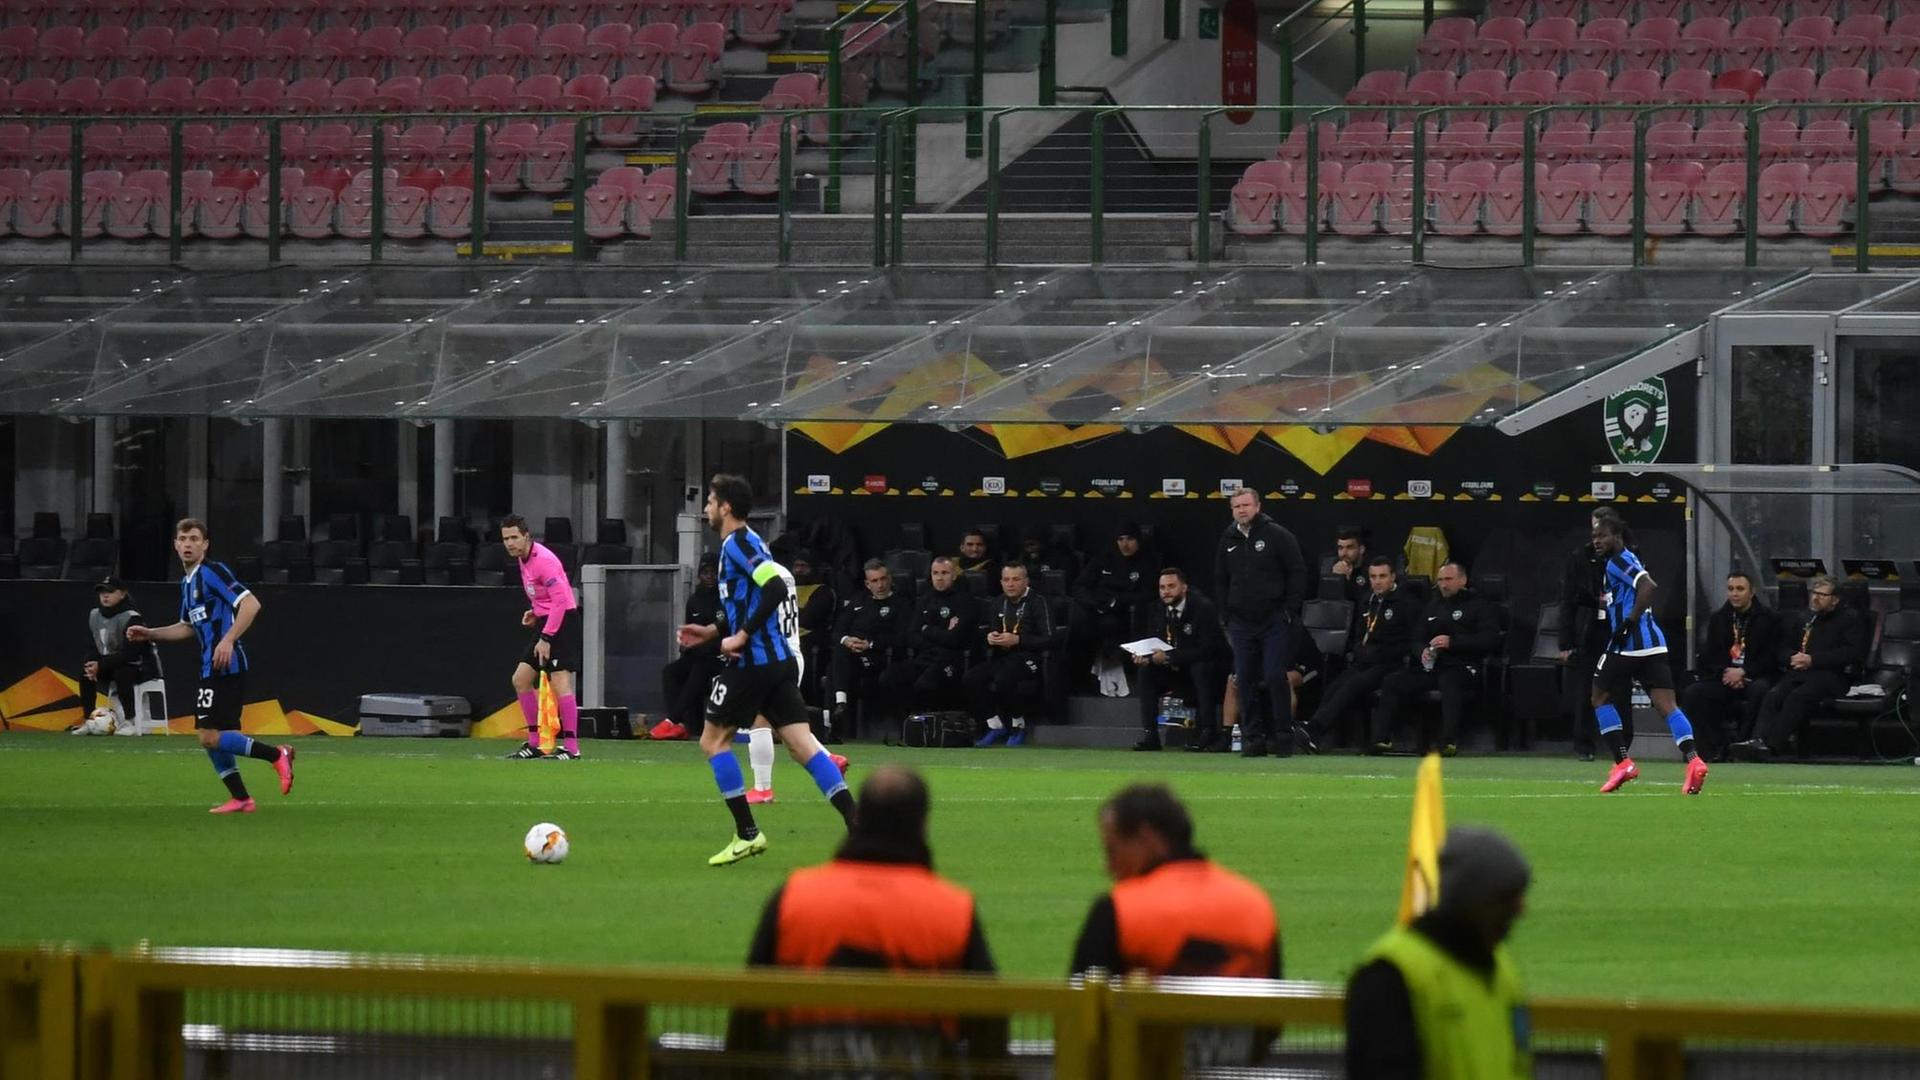 Speiele rvon Inter Mailand und Rasgrad in einer Spielszene vor leeren Zuschauerrängen. Im Vordergrund eine Bank mit zwei Männern in orangefabenen Sicherheitswesten.